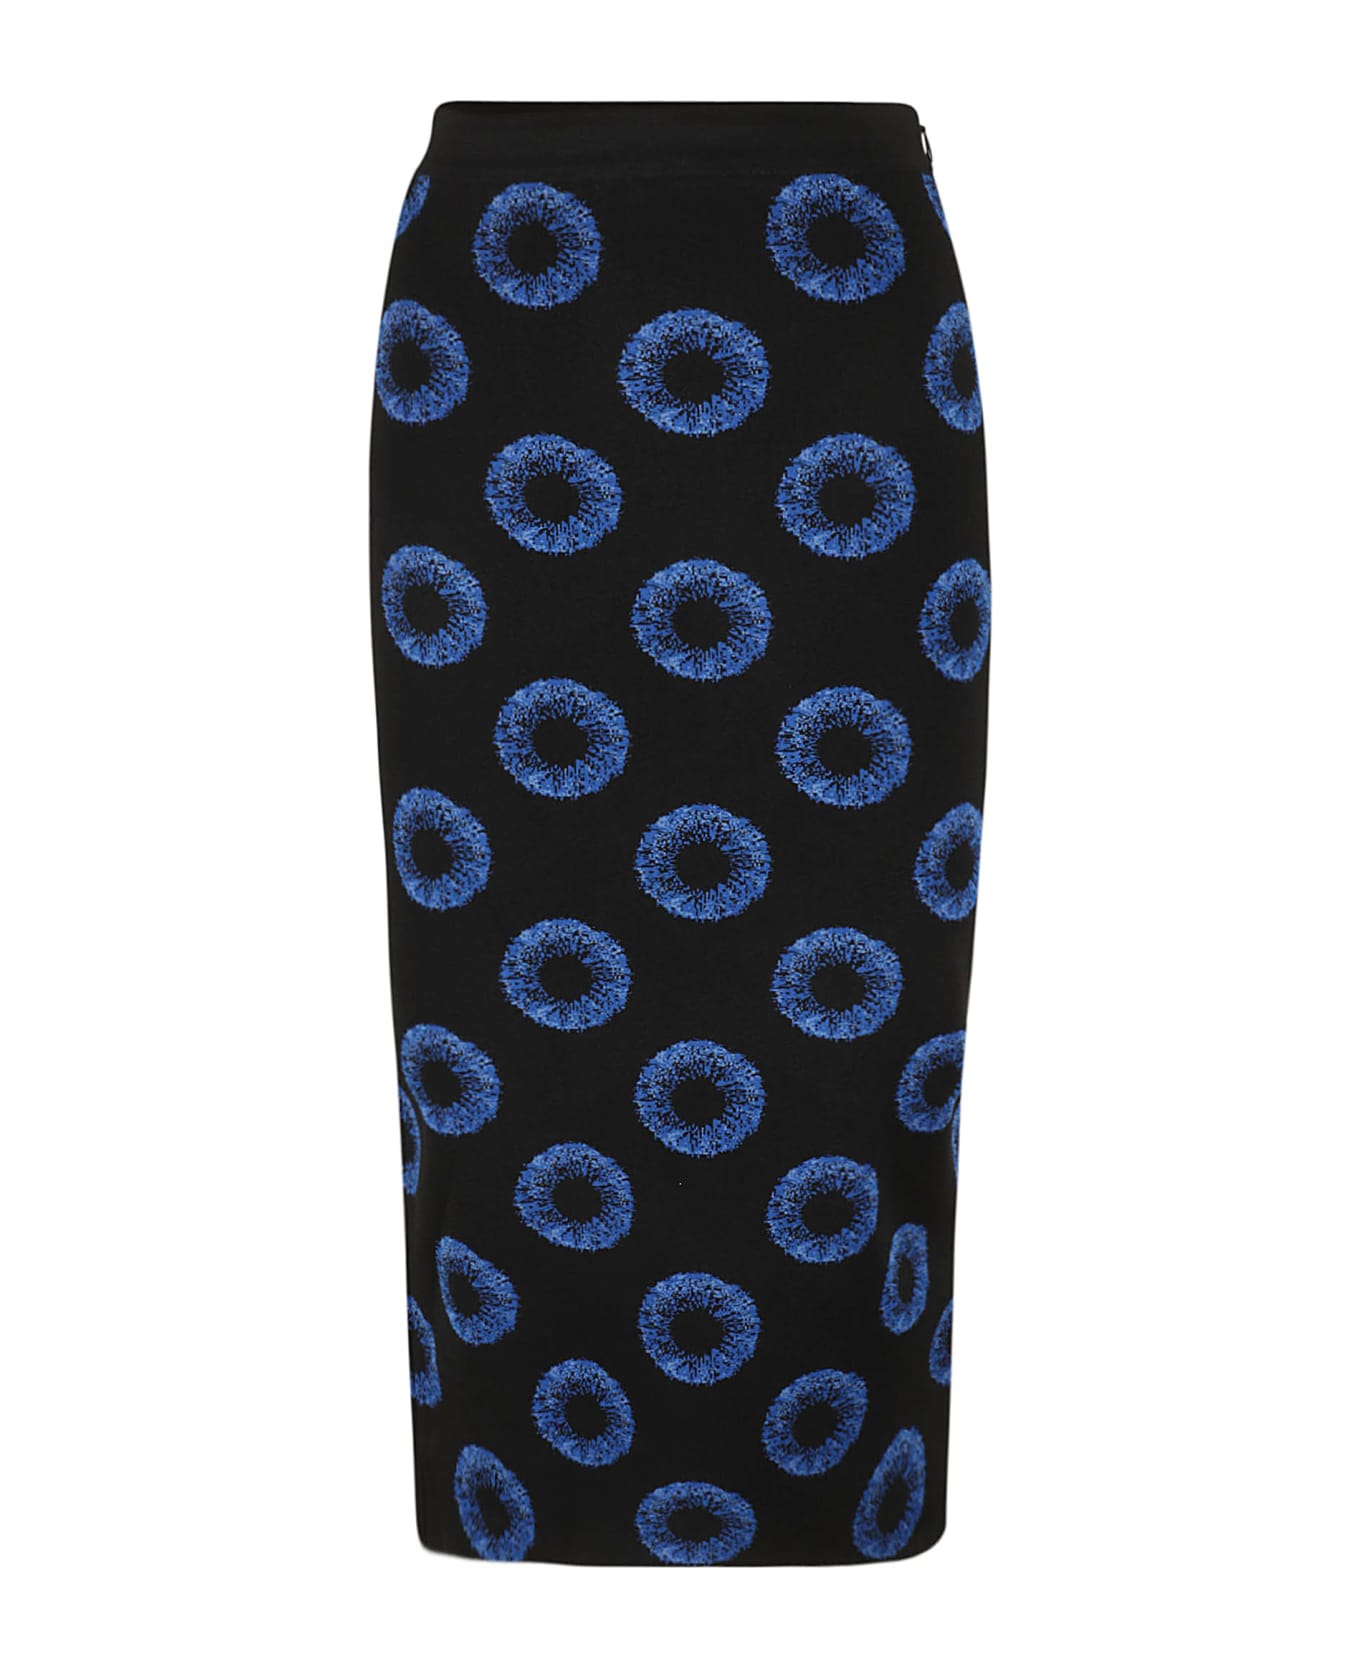 Alexander McQueen Iris Jacquard Knit Pencil Skirt - Black/Blue スカート